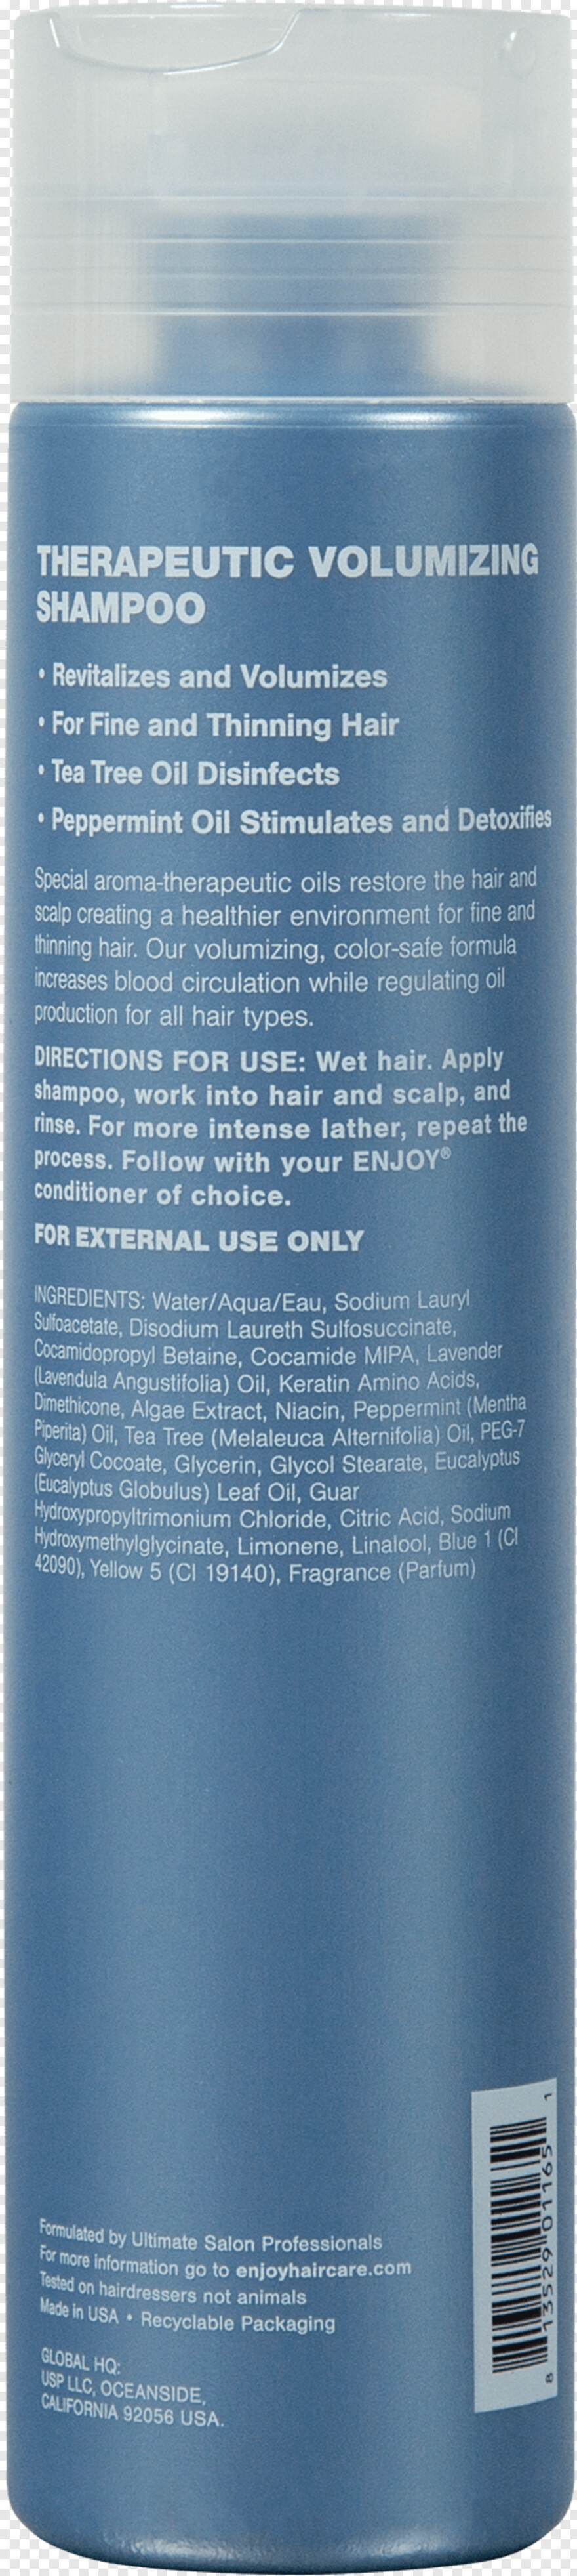 shampoo # 955116